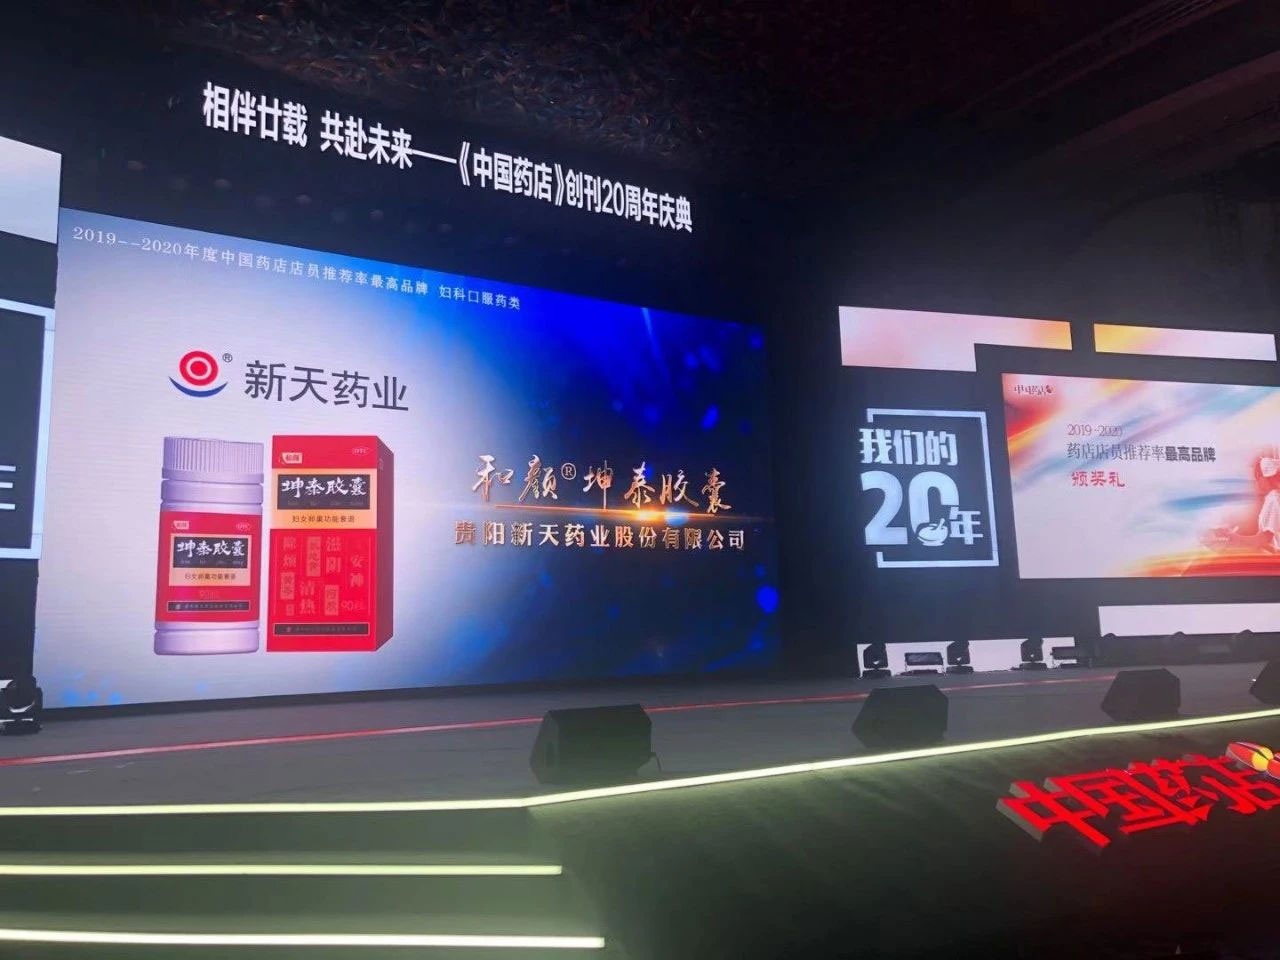 荣耀之夜！和颜<sup>®</sup>坤泰胶囊喜获“2019-2020中国药店店员推荐率最高品牌”(图2)